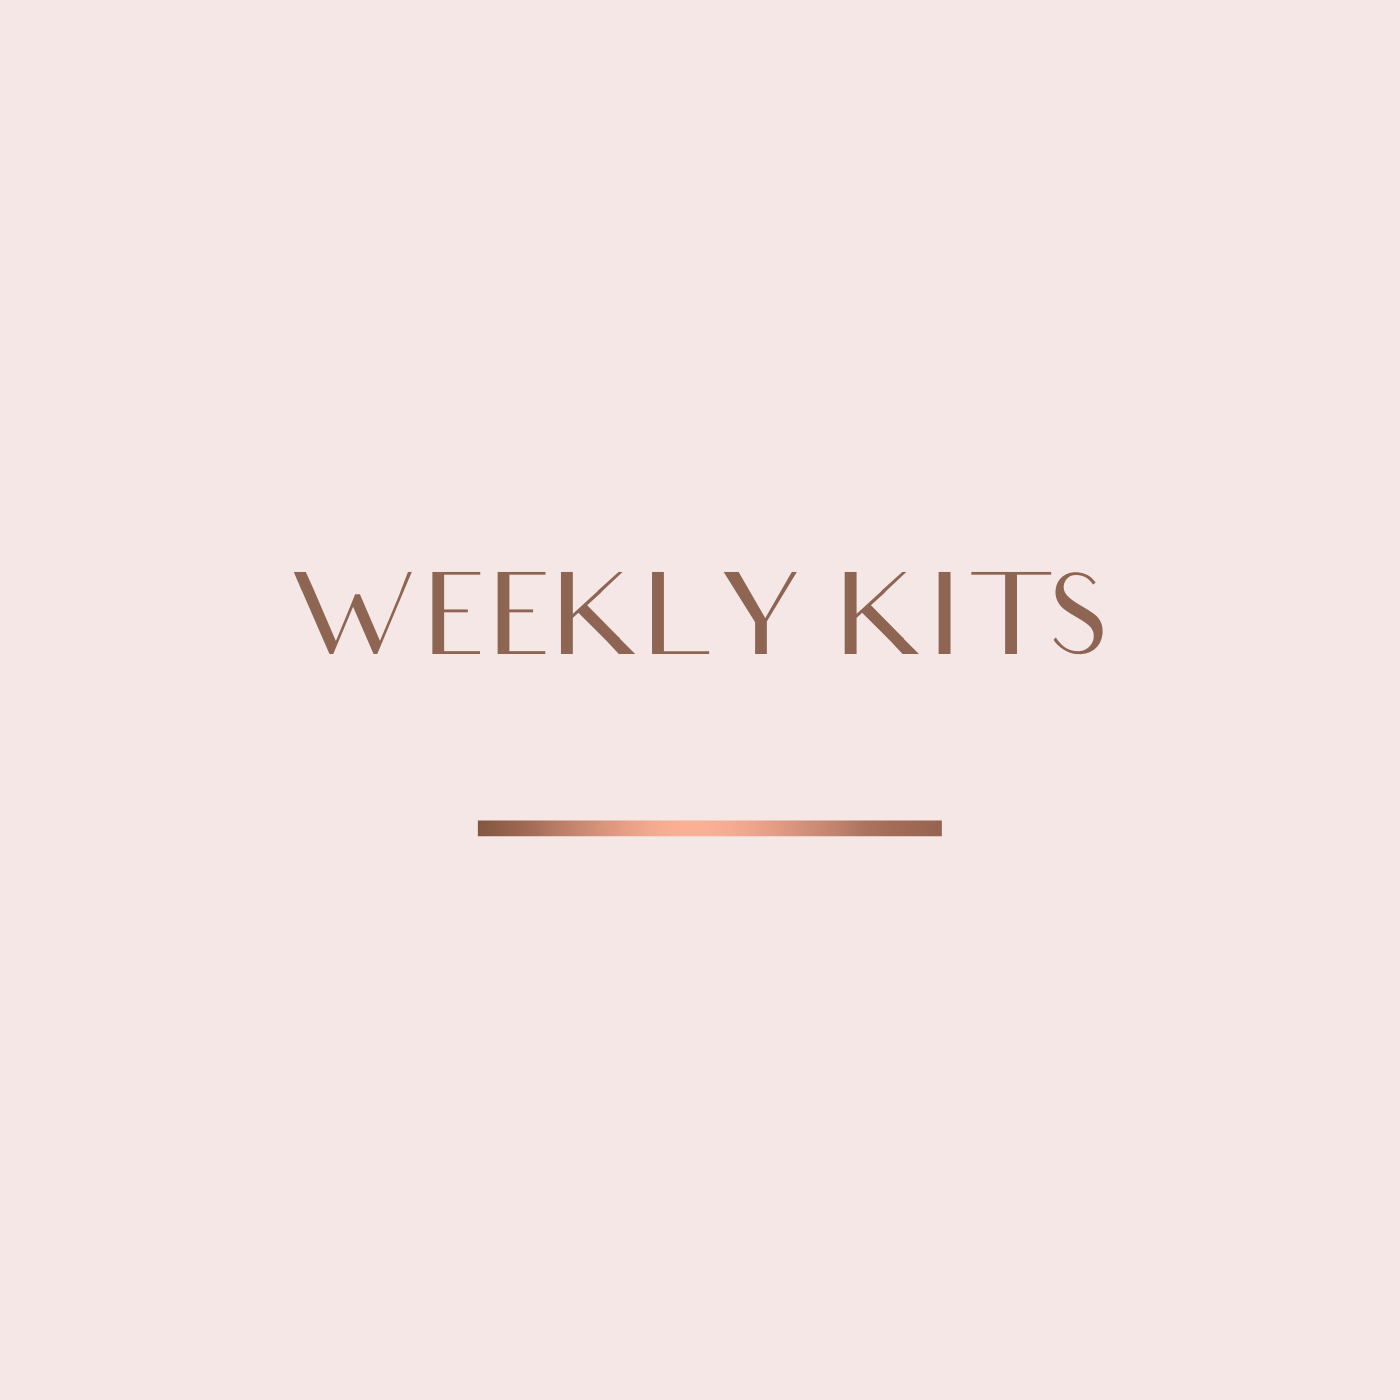 Standard Vertical Weekly Kits